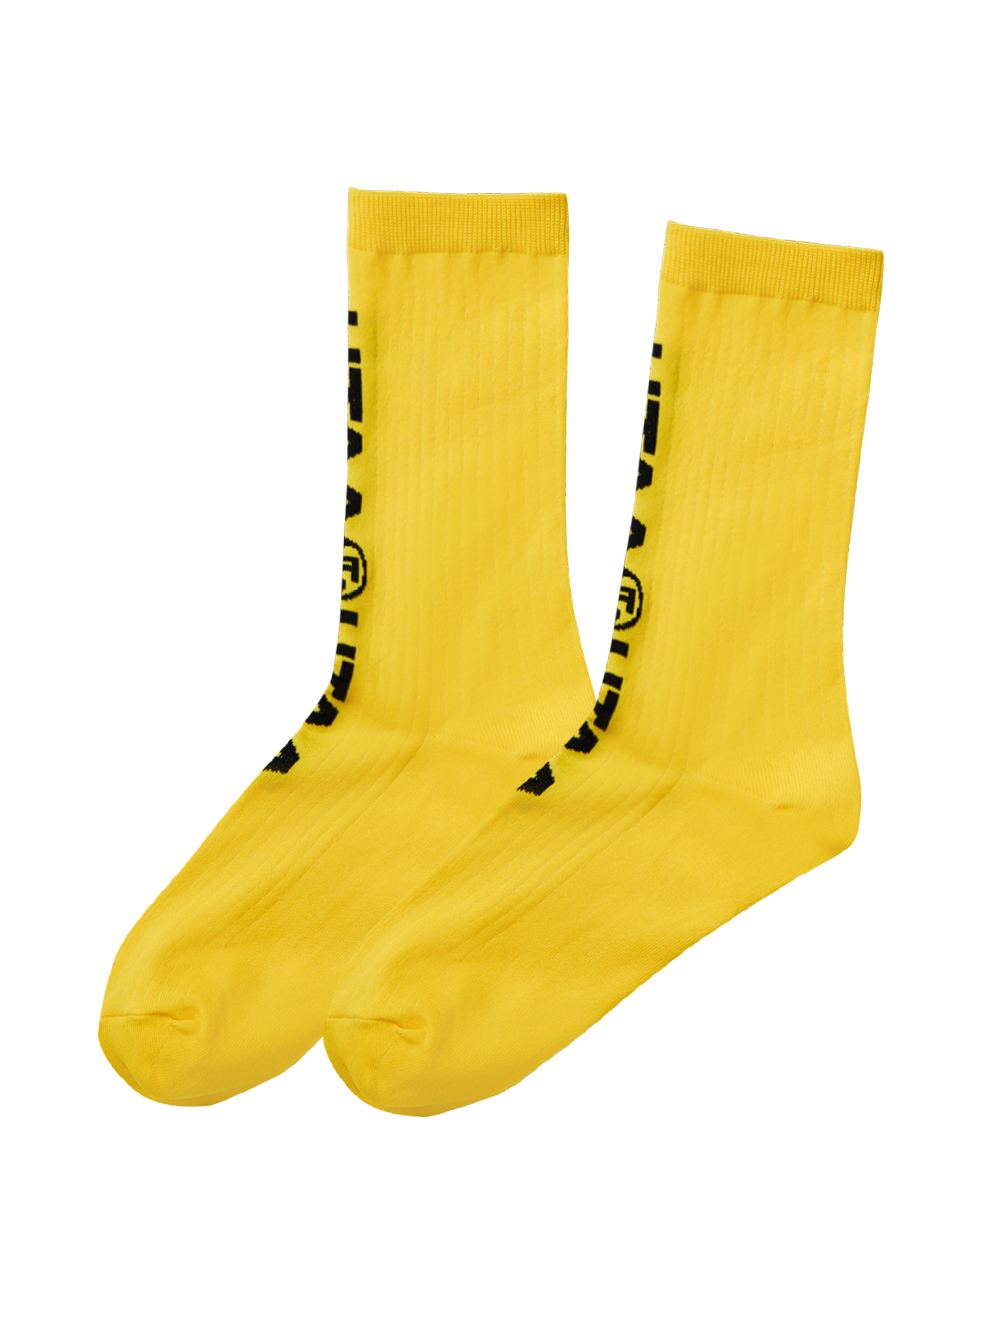 UTAA Double Logo Socks : Yellow  (UC0GSF142YE)